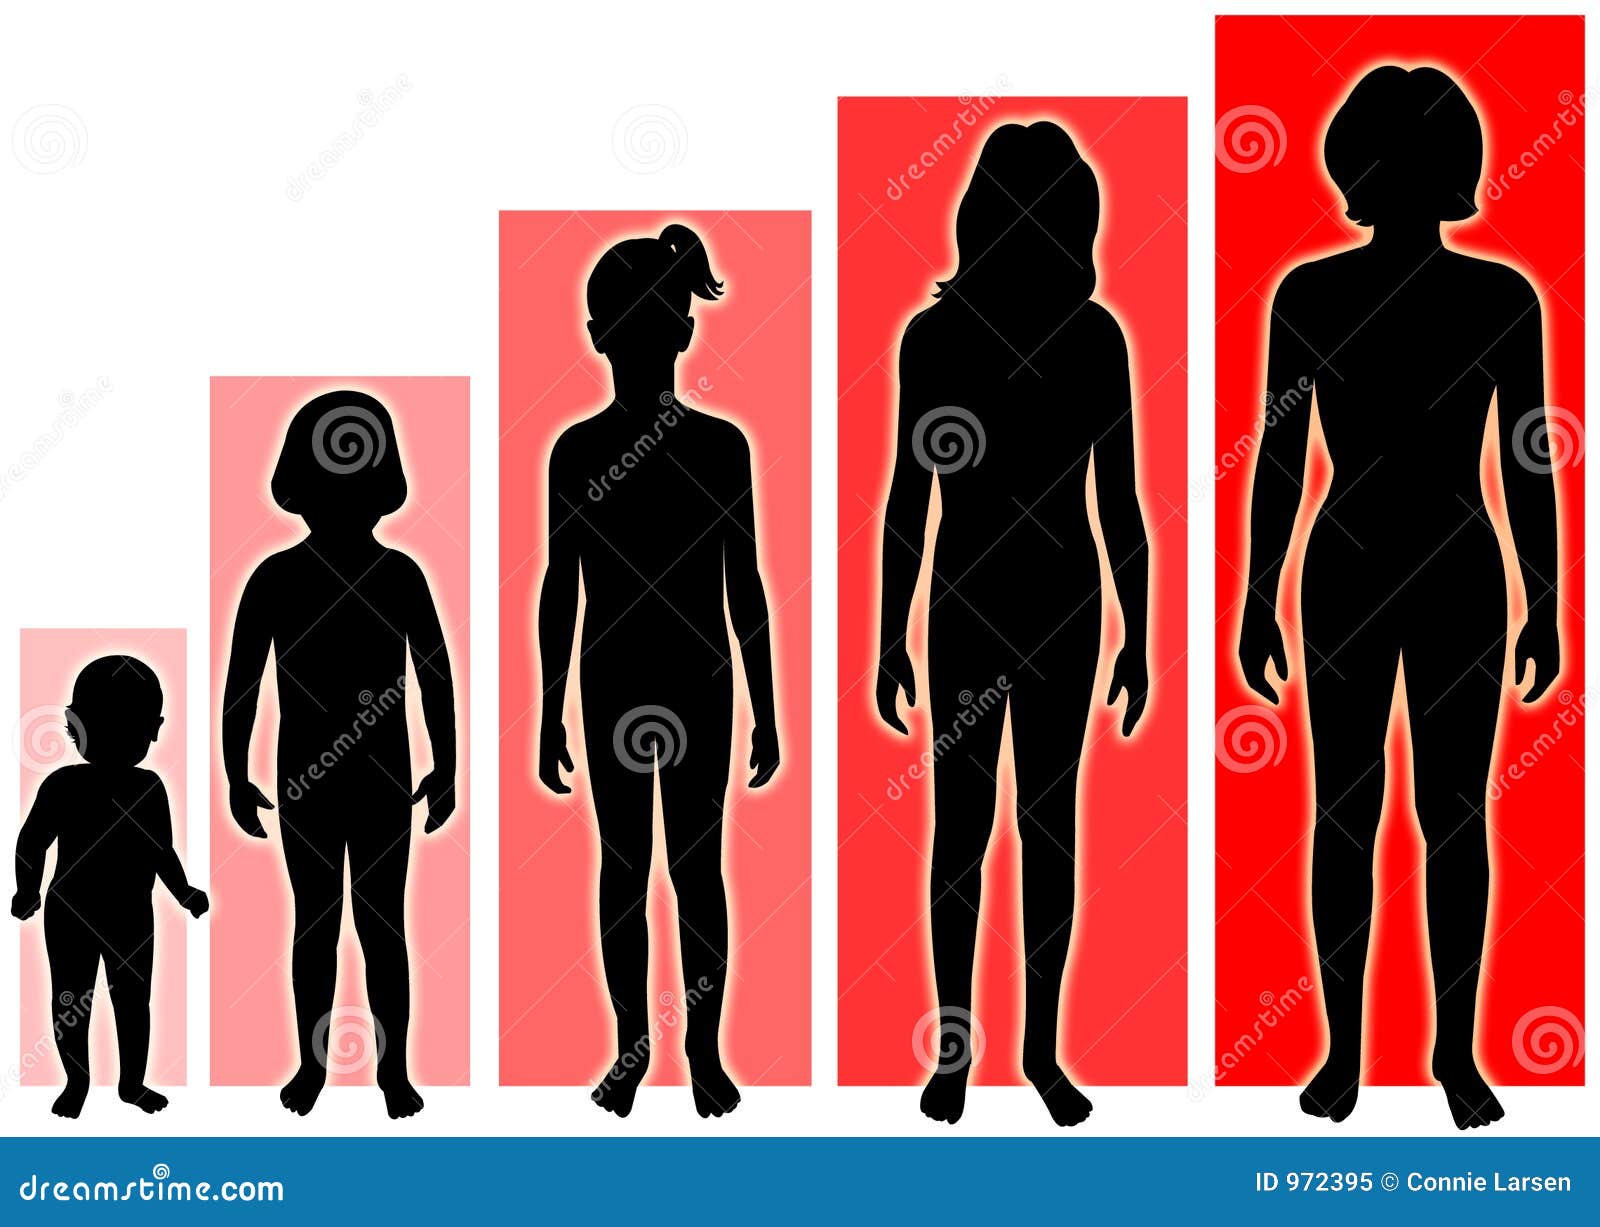 Этапы роста человека. Этапы взросления девочки. Взросление тела. Изменение тела подростка.